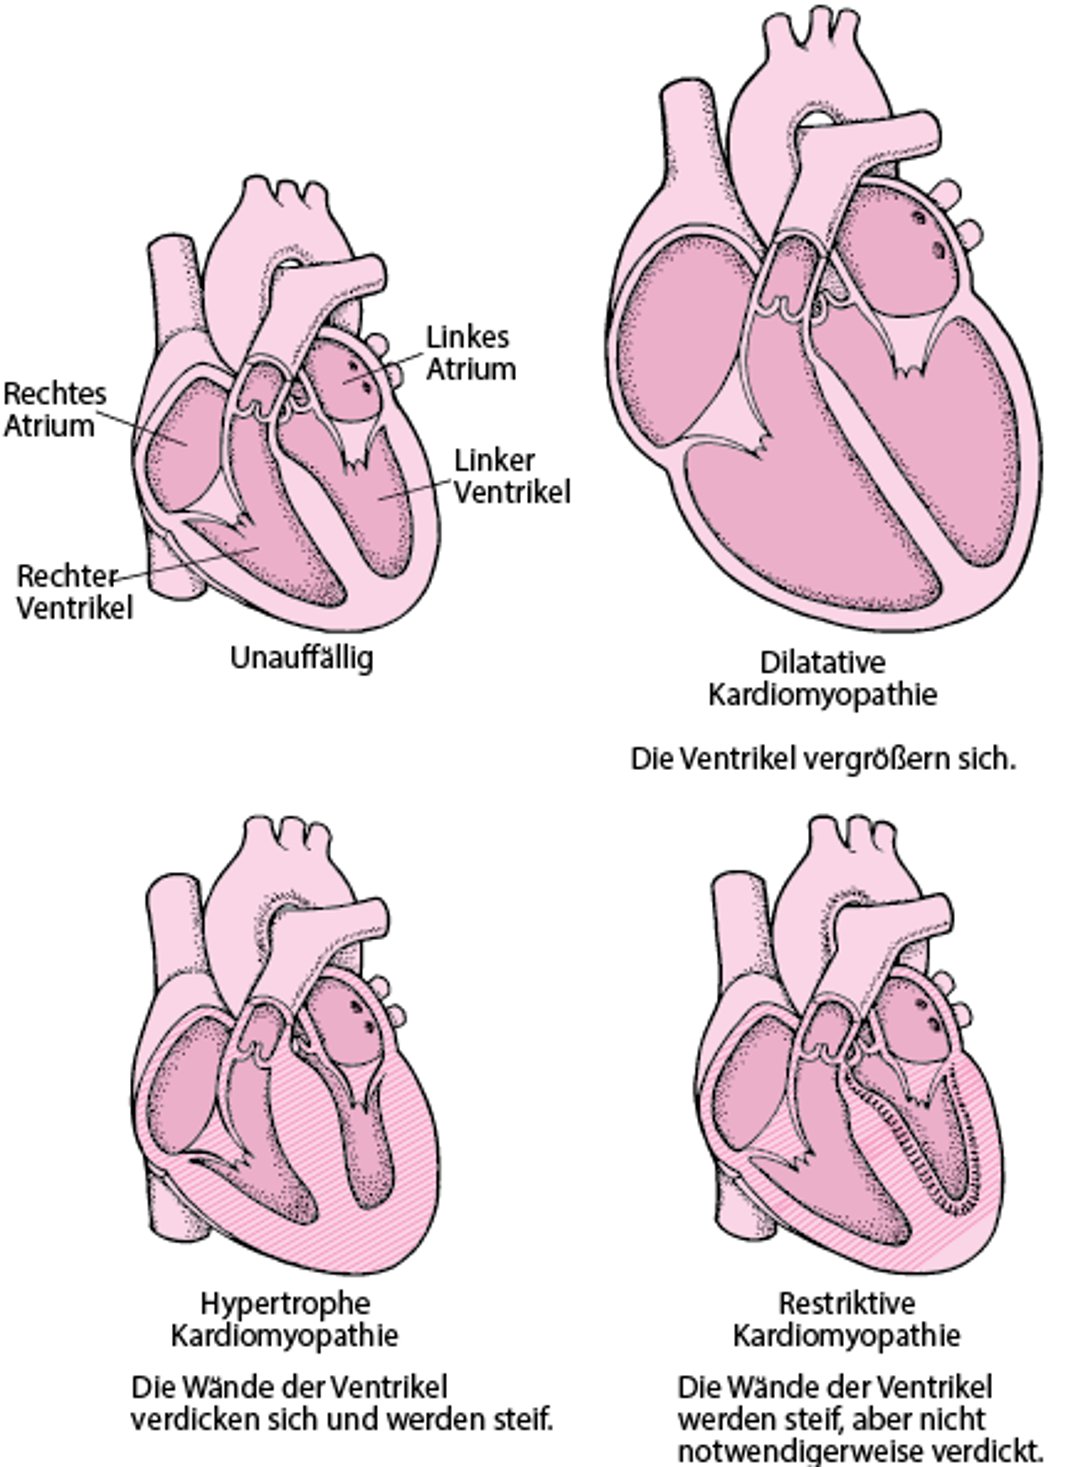 Formen von Kardiomyopathie